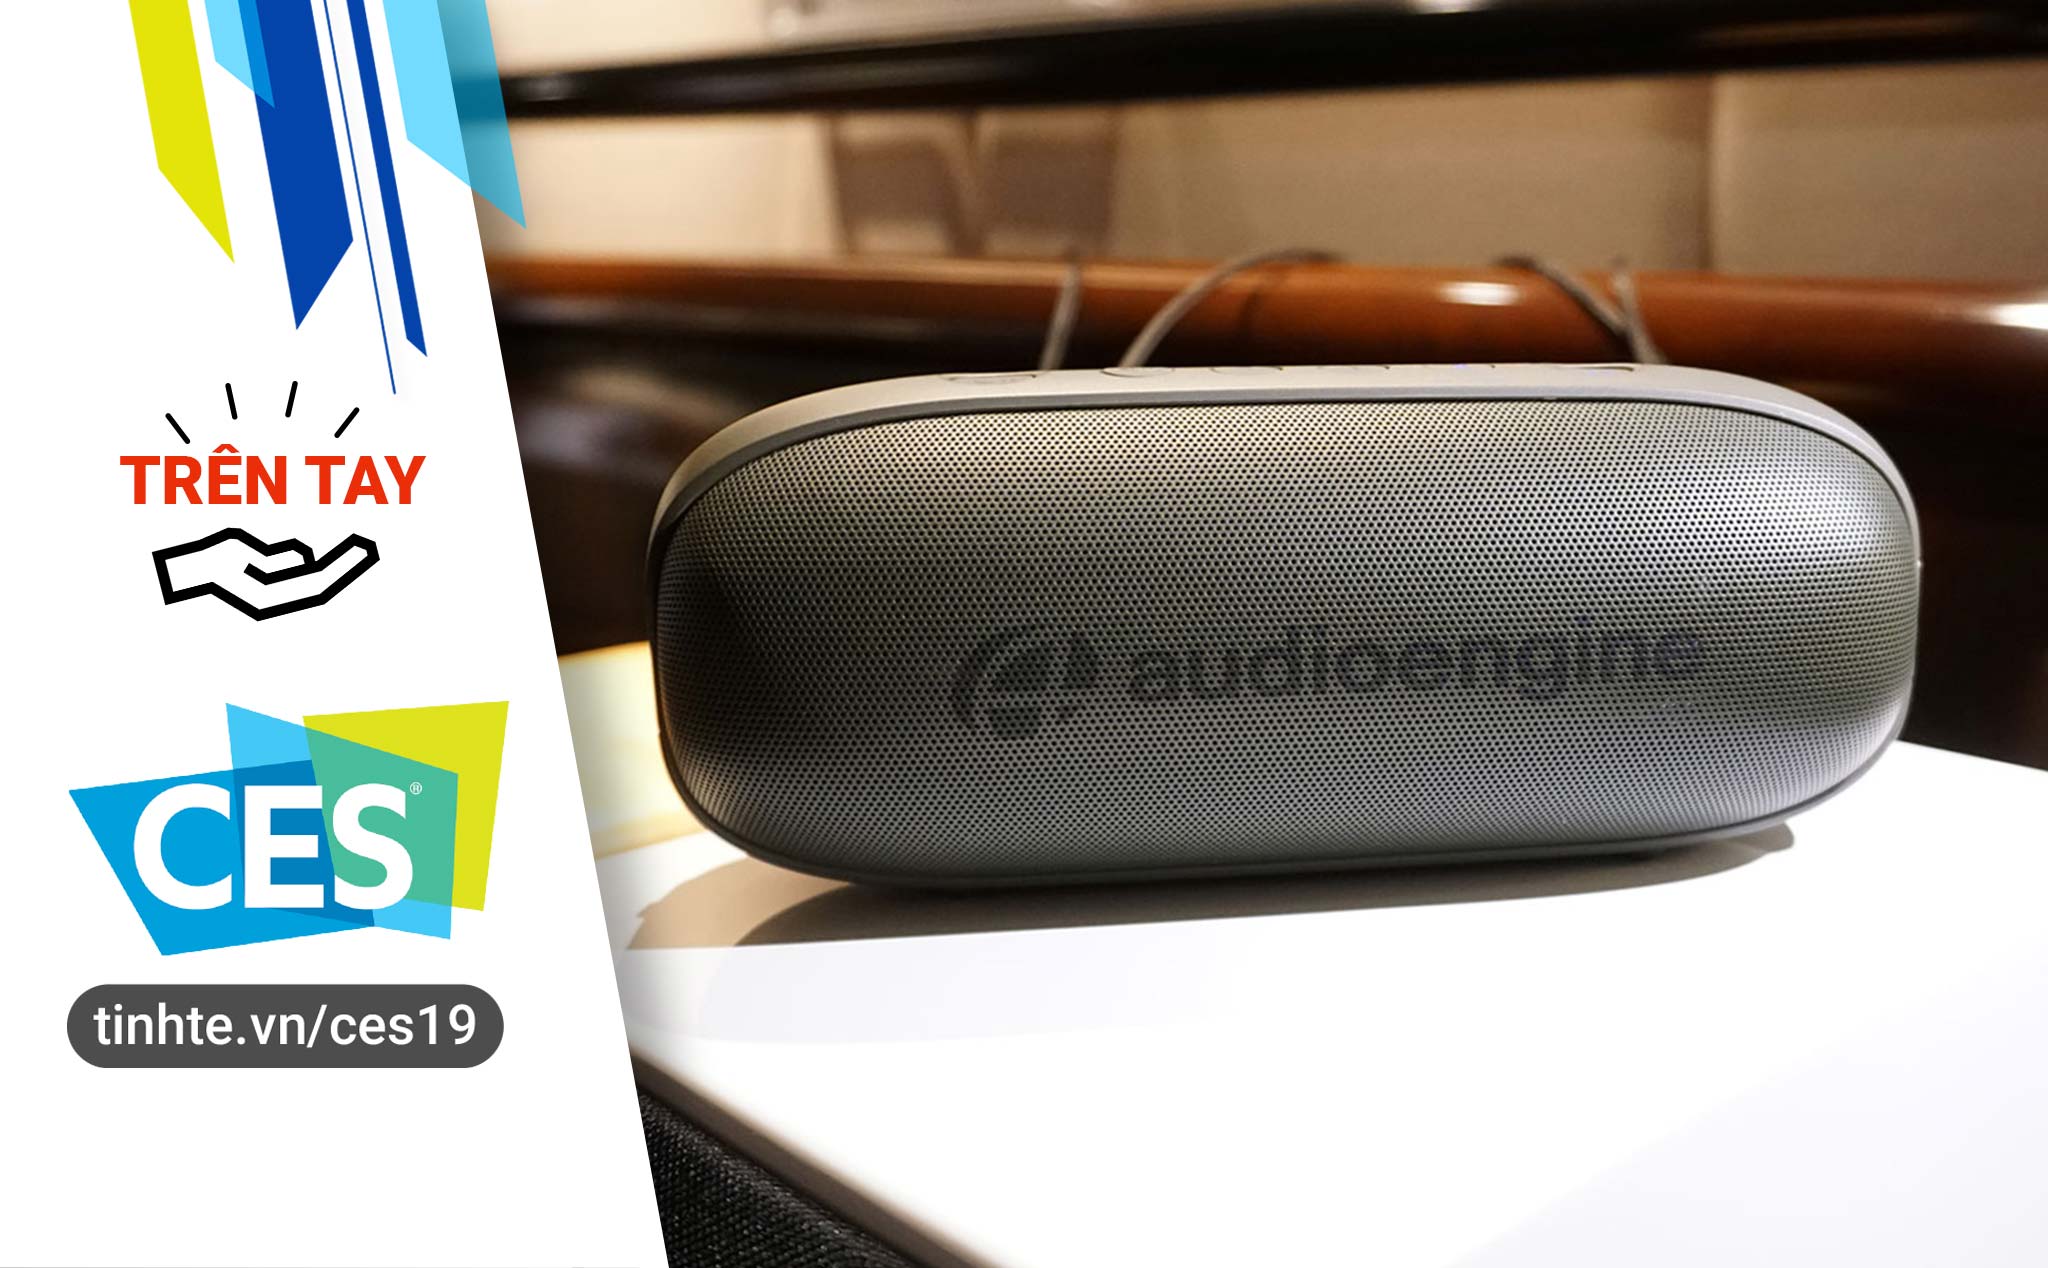 #CES19: Trên tay Audioengine 512 - loa di động nhỏ gọn đầu tiên của hãng